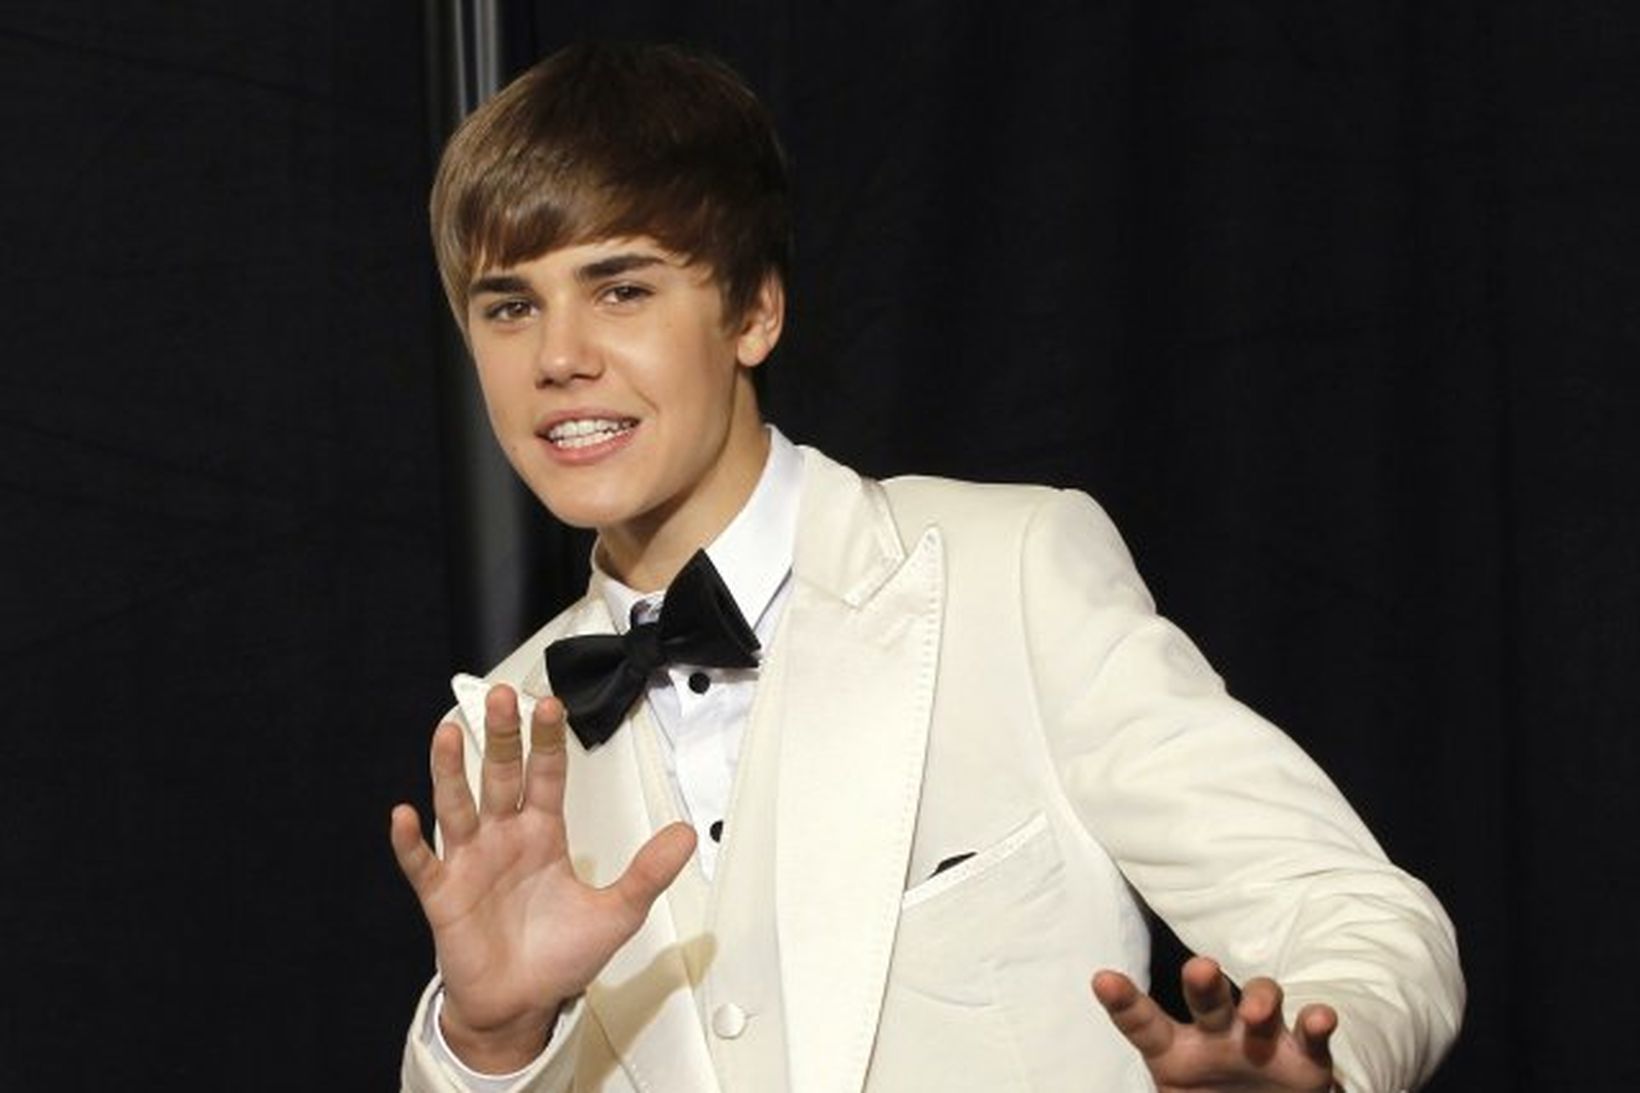 Justin Bieber á Grammy-hátíðinni sem haldin var nýverið.